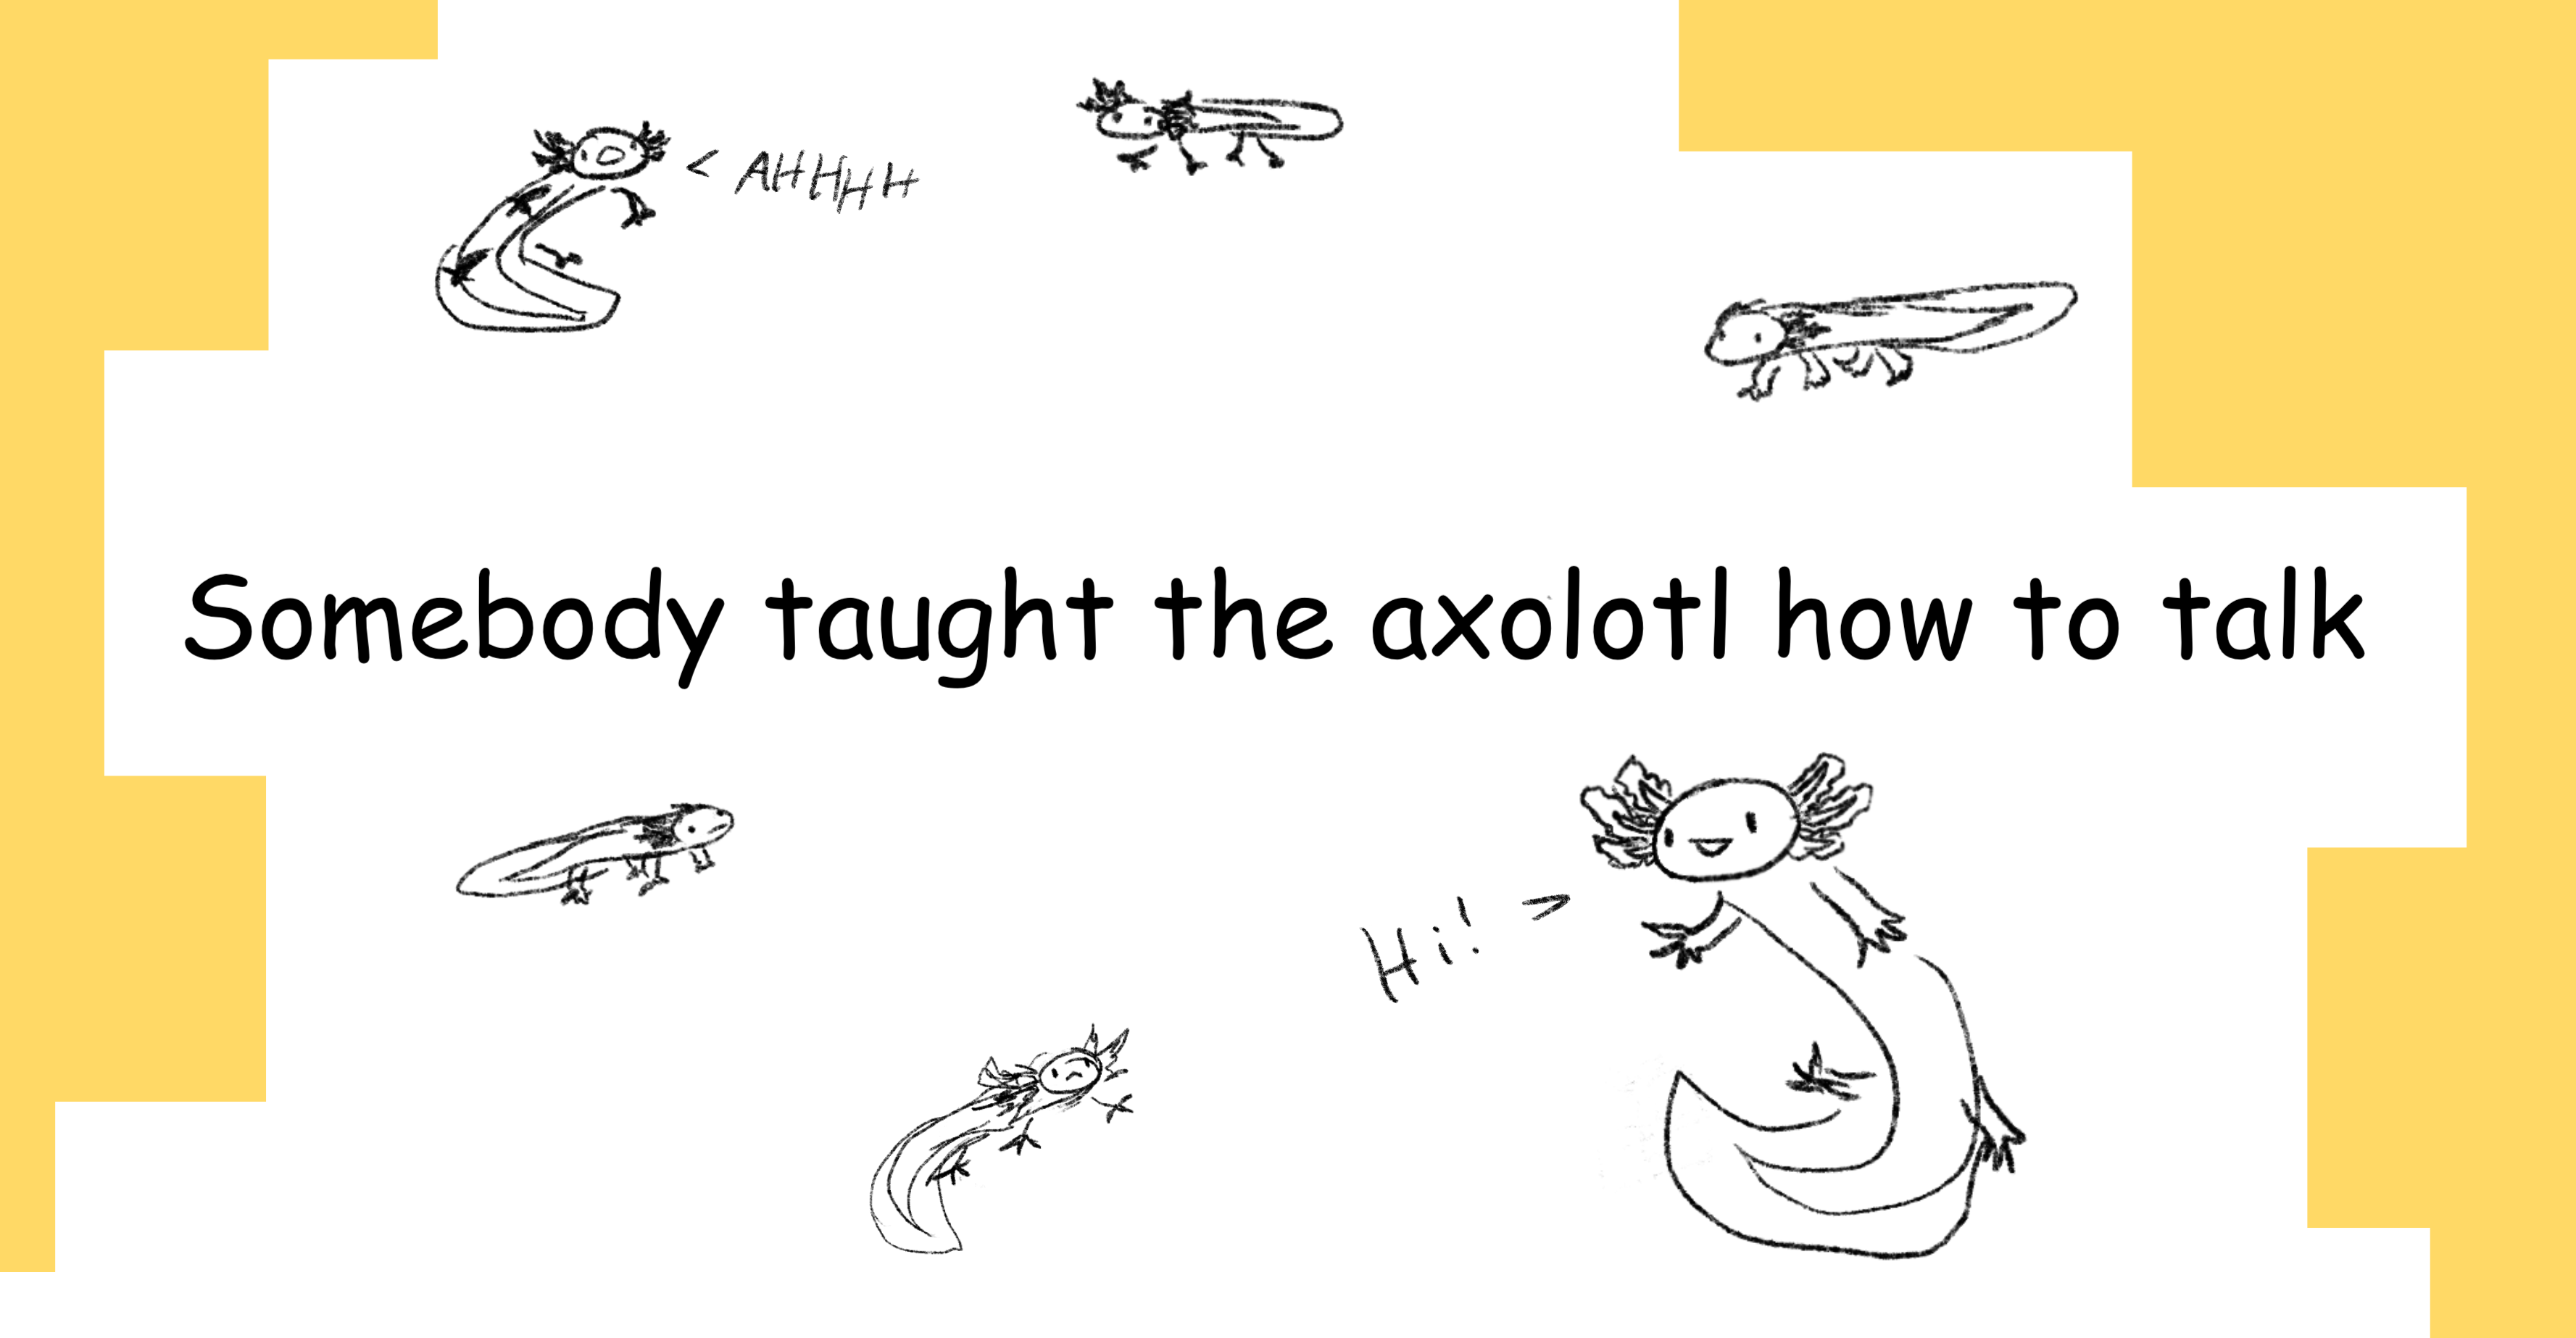 Somebody taught the axolotl how to talk